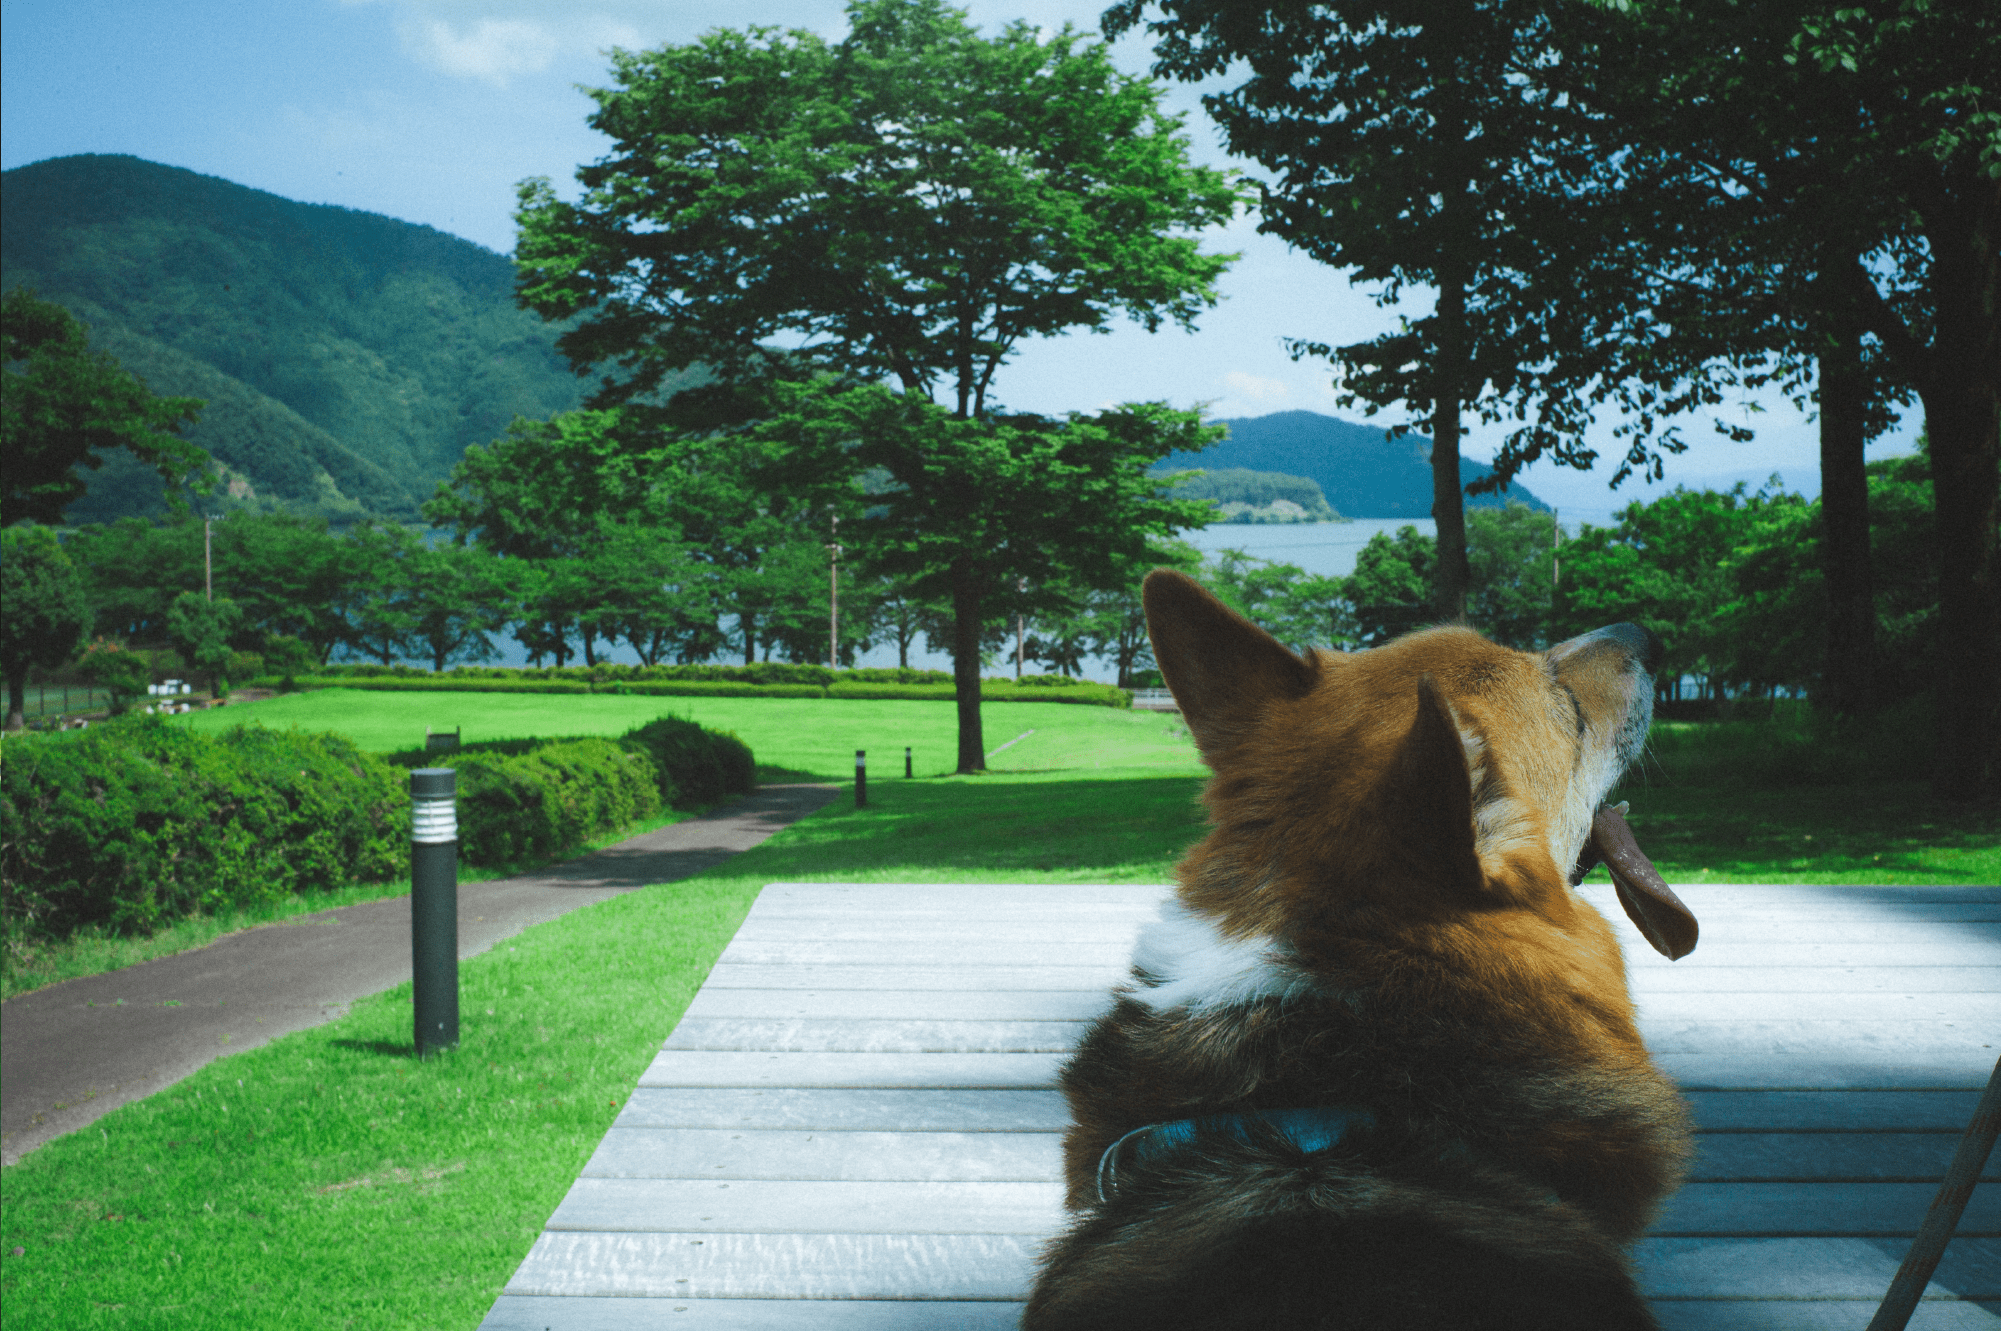 奥琵琶湖の大自然を独り占め 満天の星空、時には暗闇、本当の自然を感じる場所